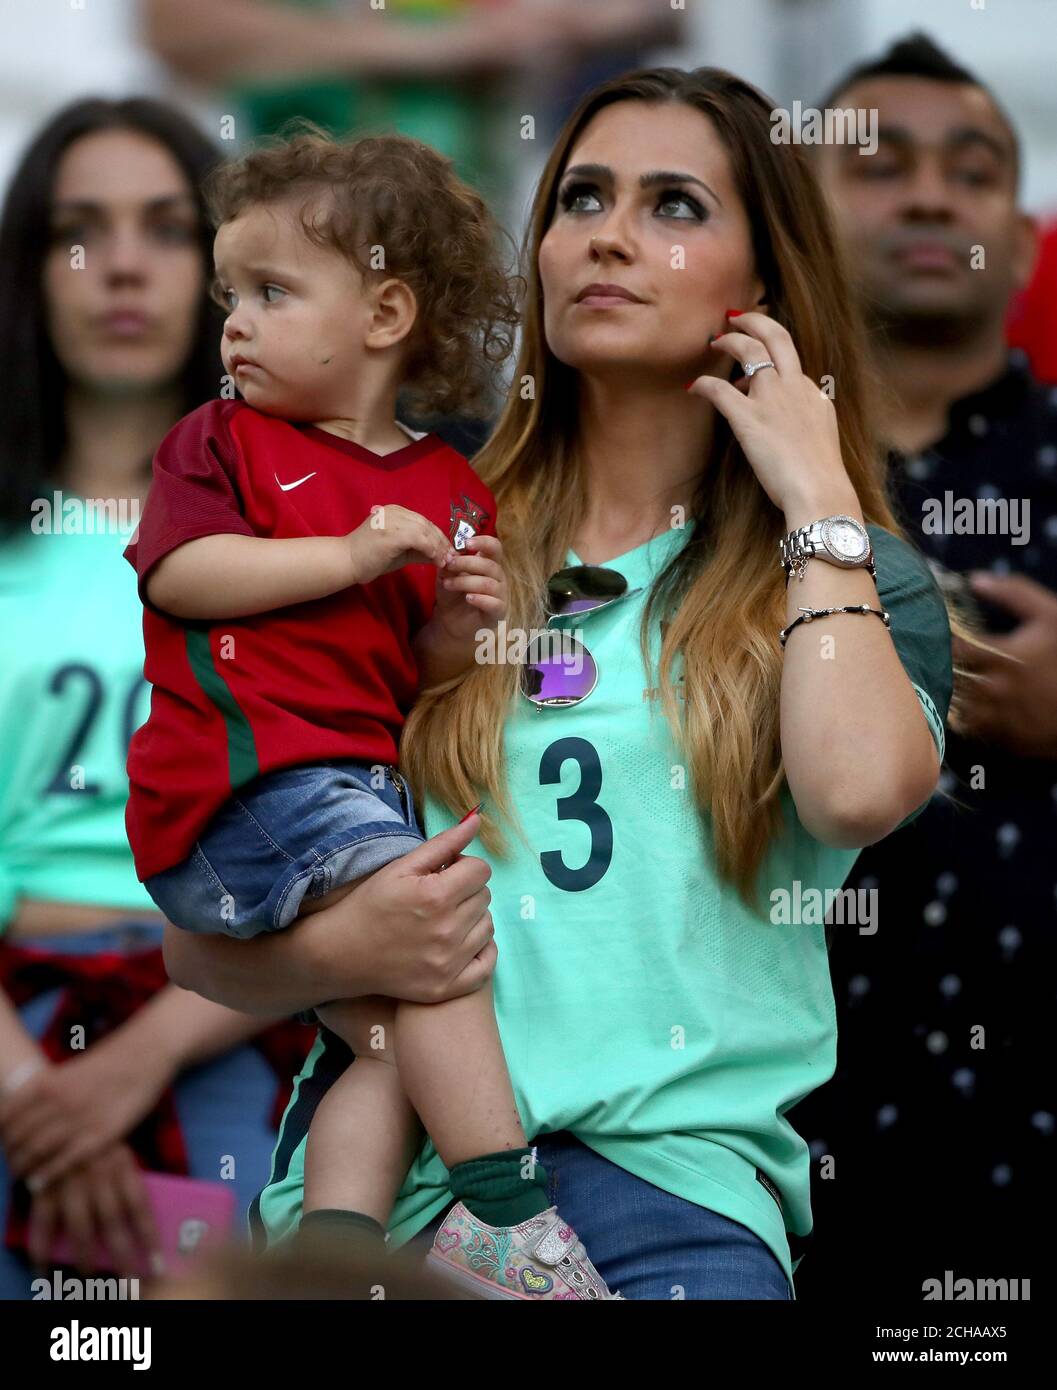 Ana Sofia Moreira fidanzata della Pepe del Portogallo negli stand. Foto Stock